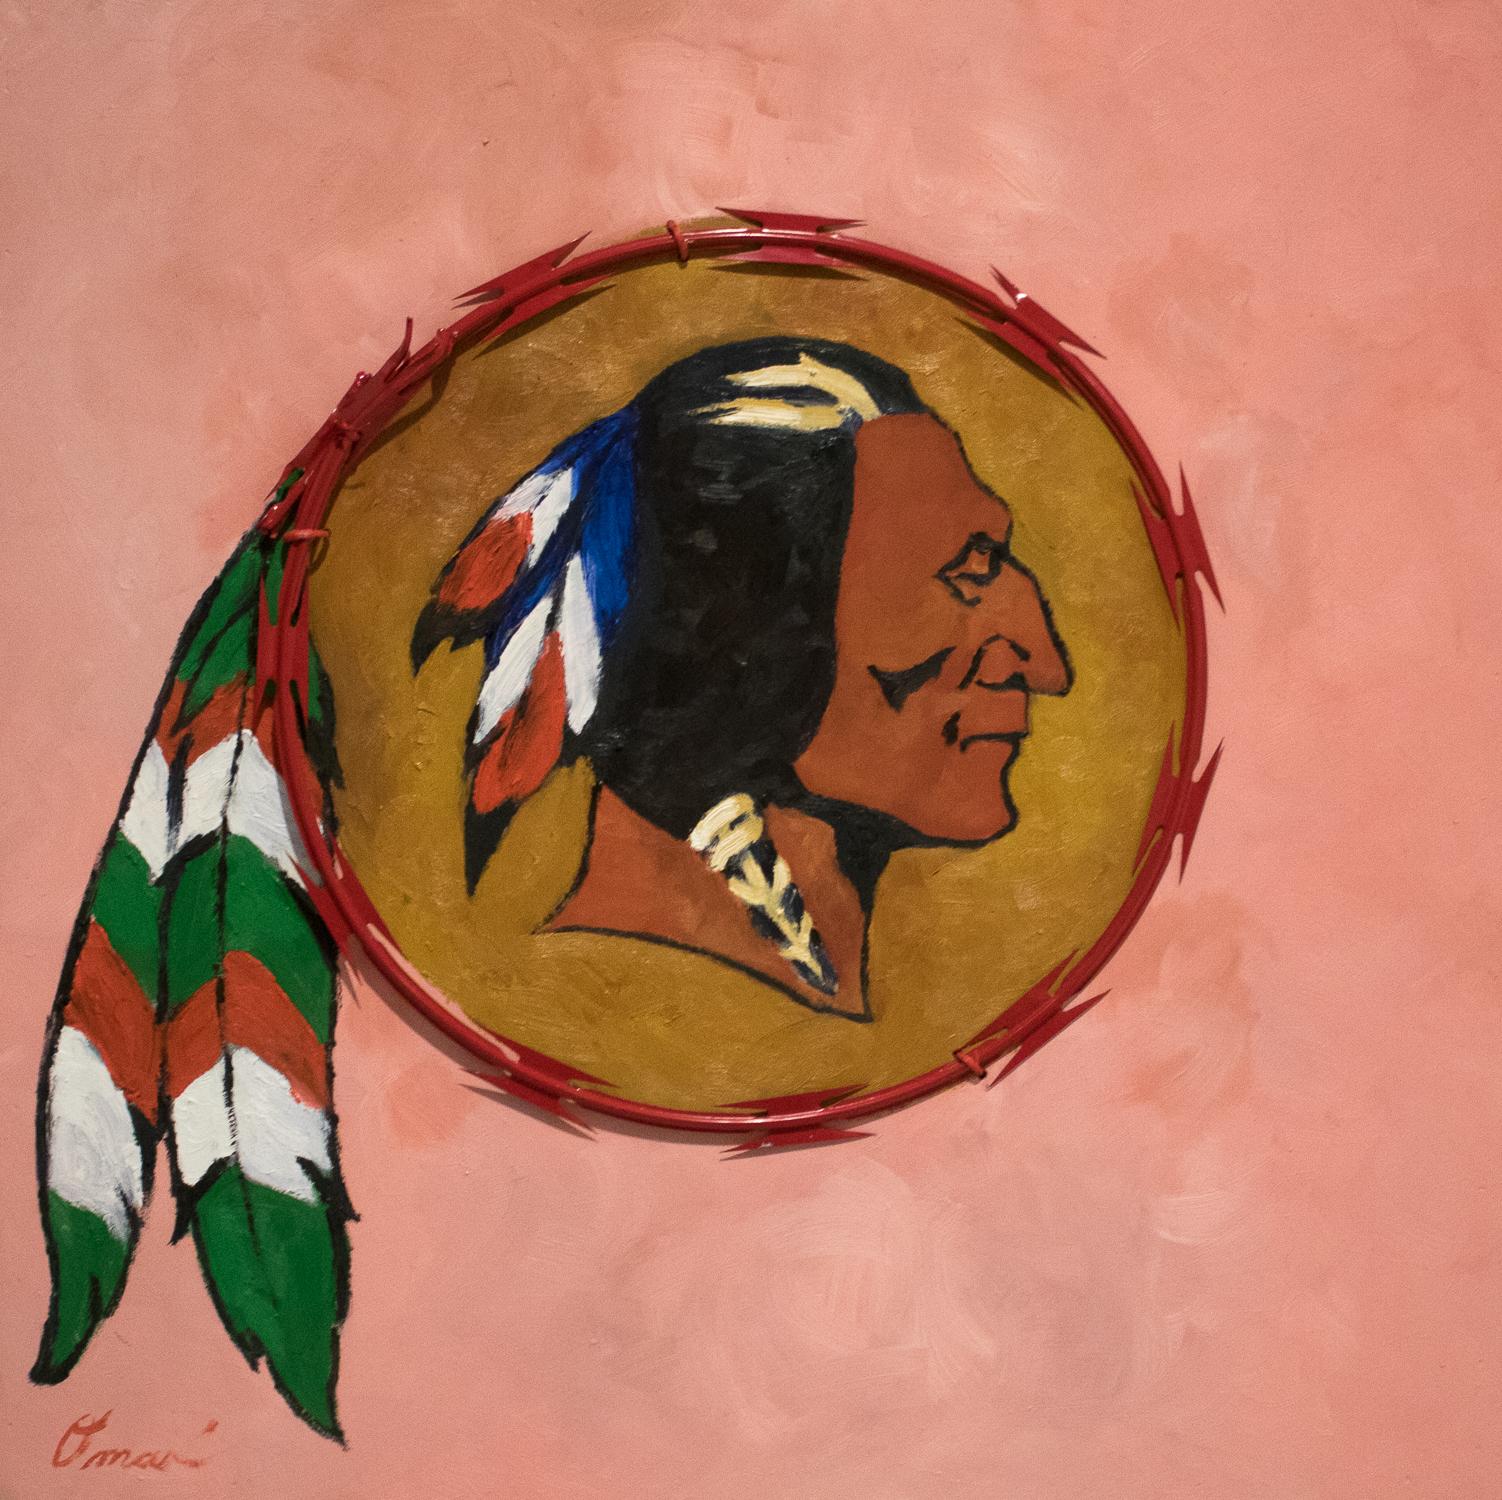 REDSKIN – zeitgenössisches politisches Gemälde, rosa, roter Kammdraht, einheimischer Häuptling